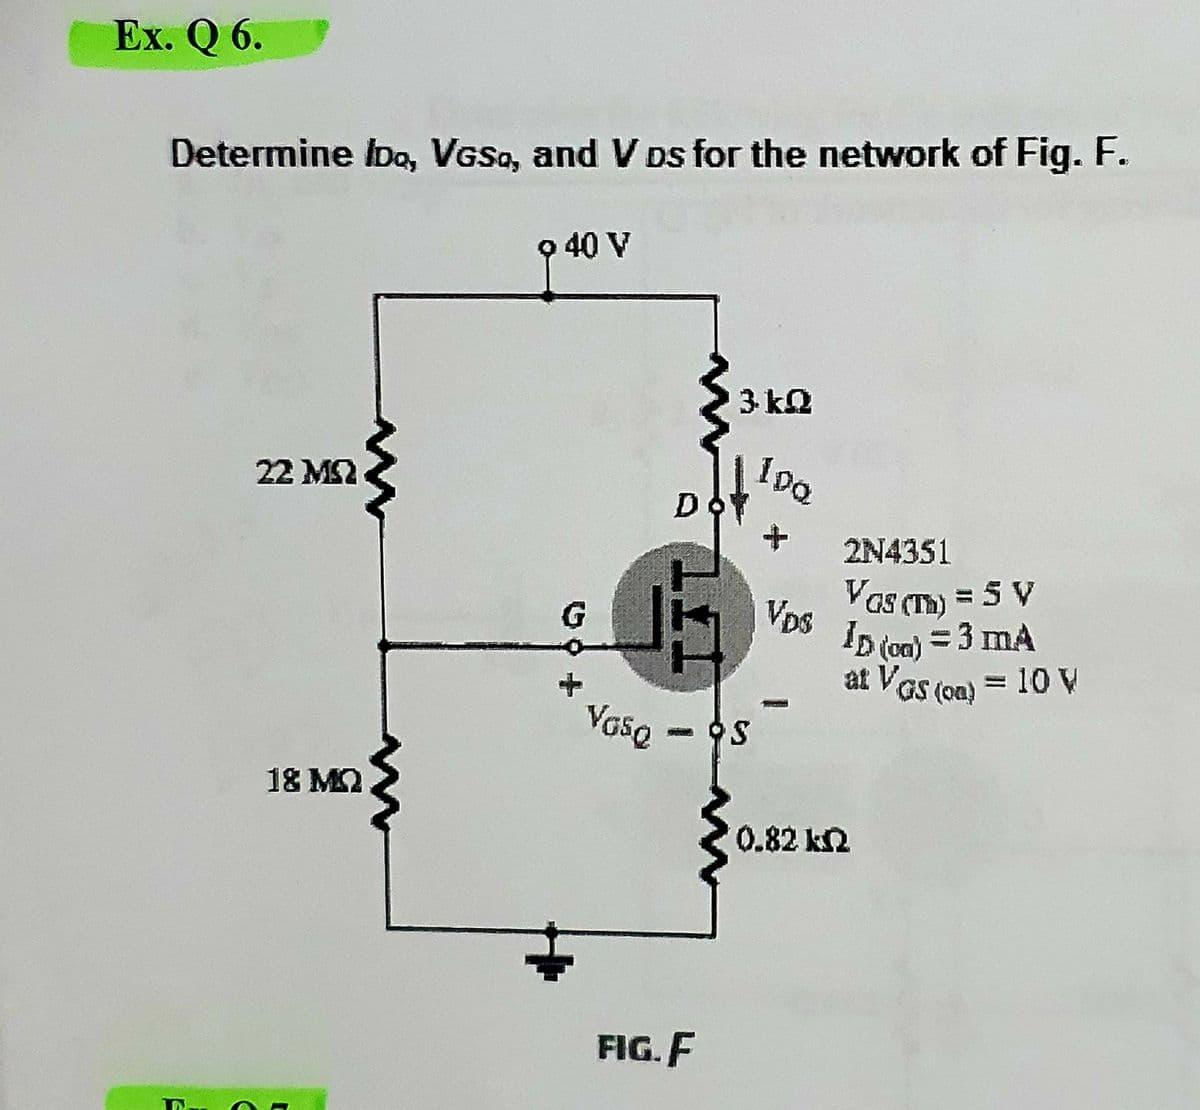 Ex. Q 6.
Determine Ibo, VGSo, and V Ds for the network of Fig. F.
o 40 V
3 k2
10a
22 MS2
D
2N4351
Vas (Tm) = 5 V
Vps
ID (on) = 3 mA
at VGs (on) = 10 V
Vase
- OS
18 M2
0.82 k2
FIG. F
